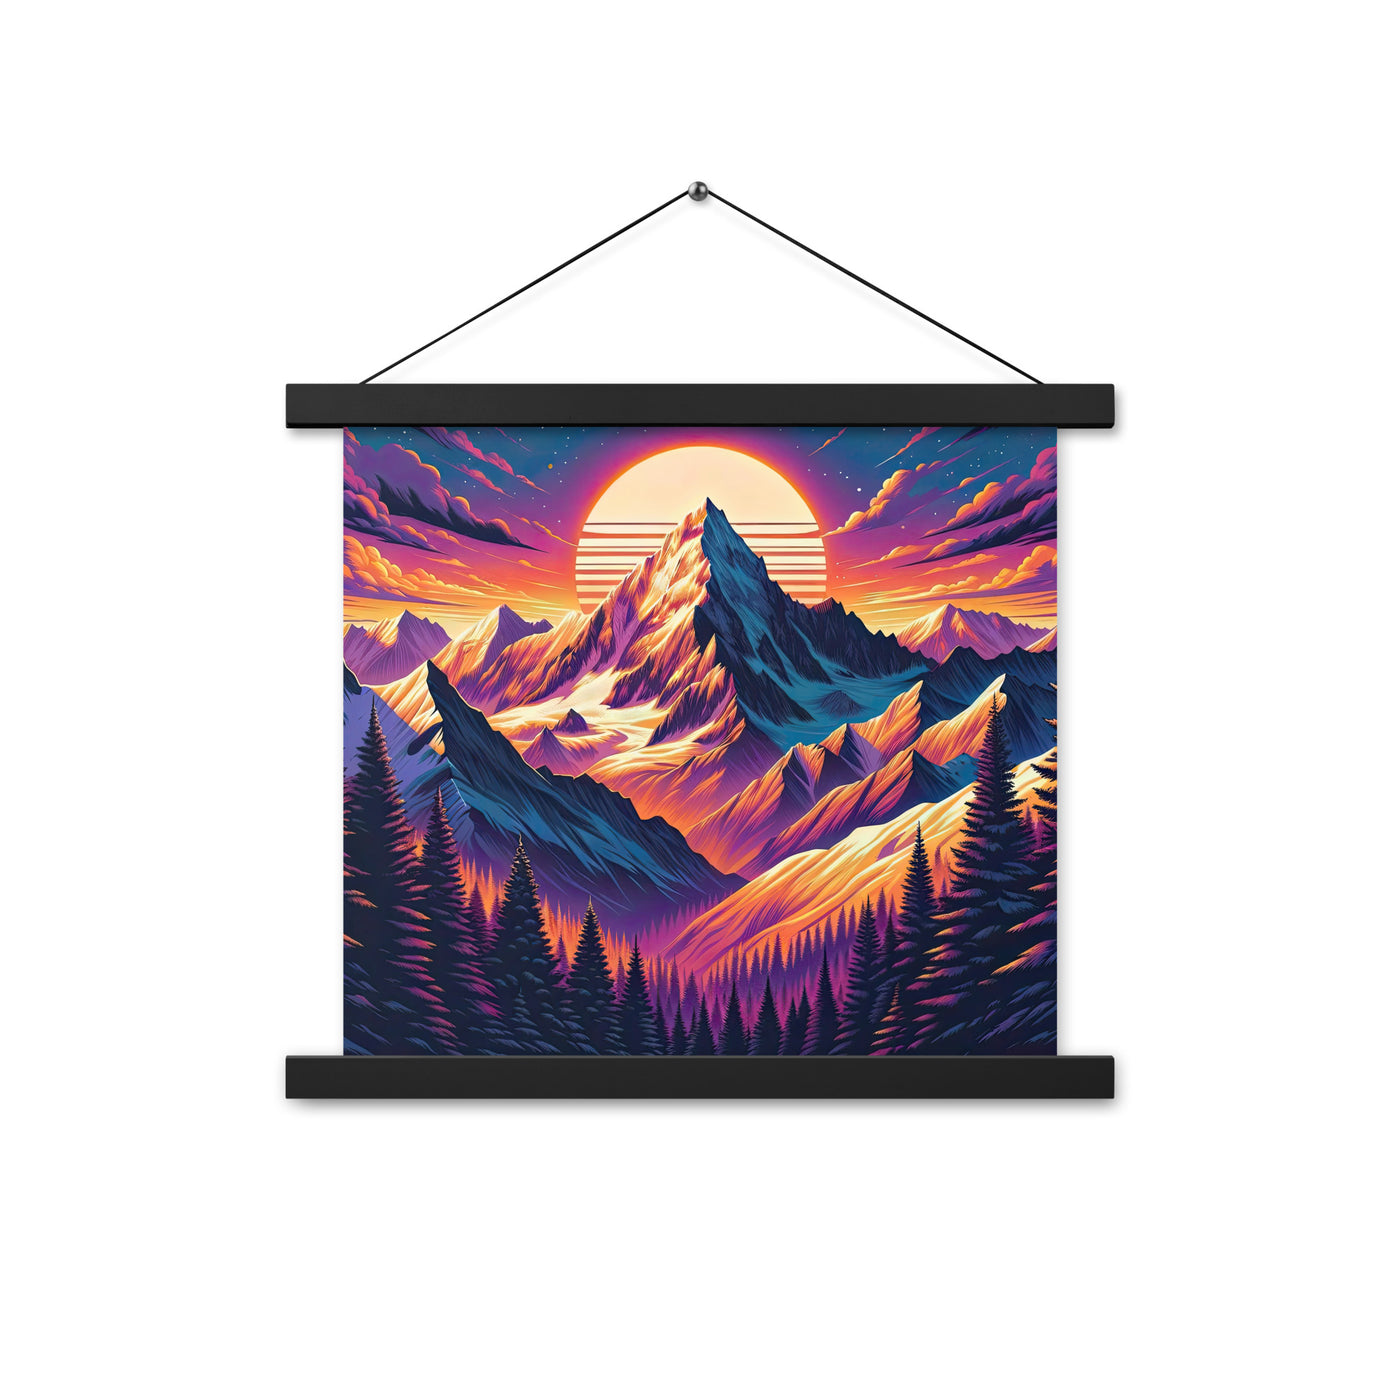 Lebendiger Alpen-Sonnenuntergang, schneebedeckte Gipfel in warmen Tönen - Premium Poster mit Aufhängung berge xxx yyy zzz 35.6 x 35.6 cm